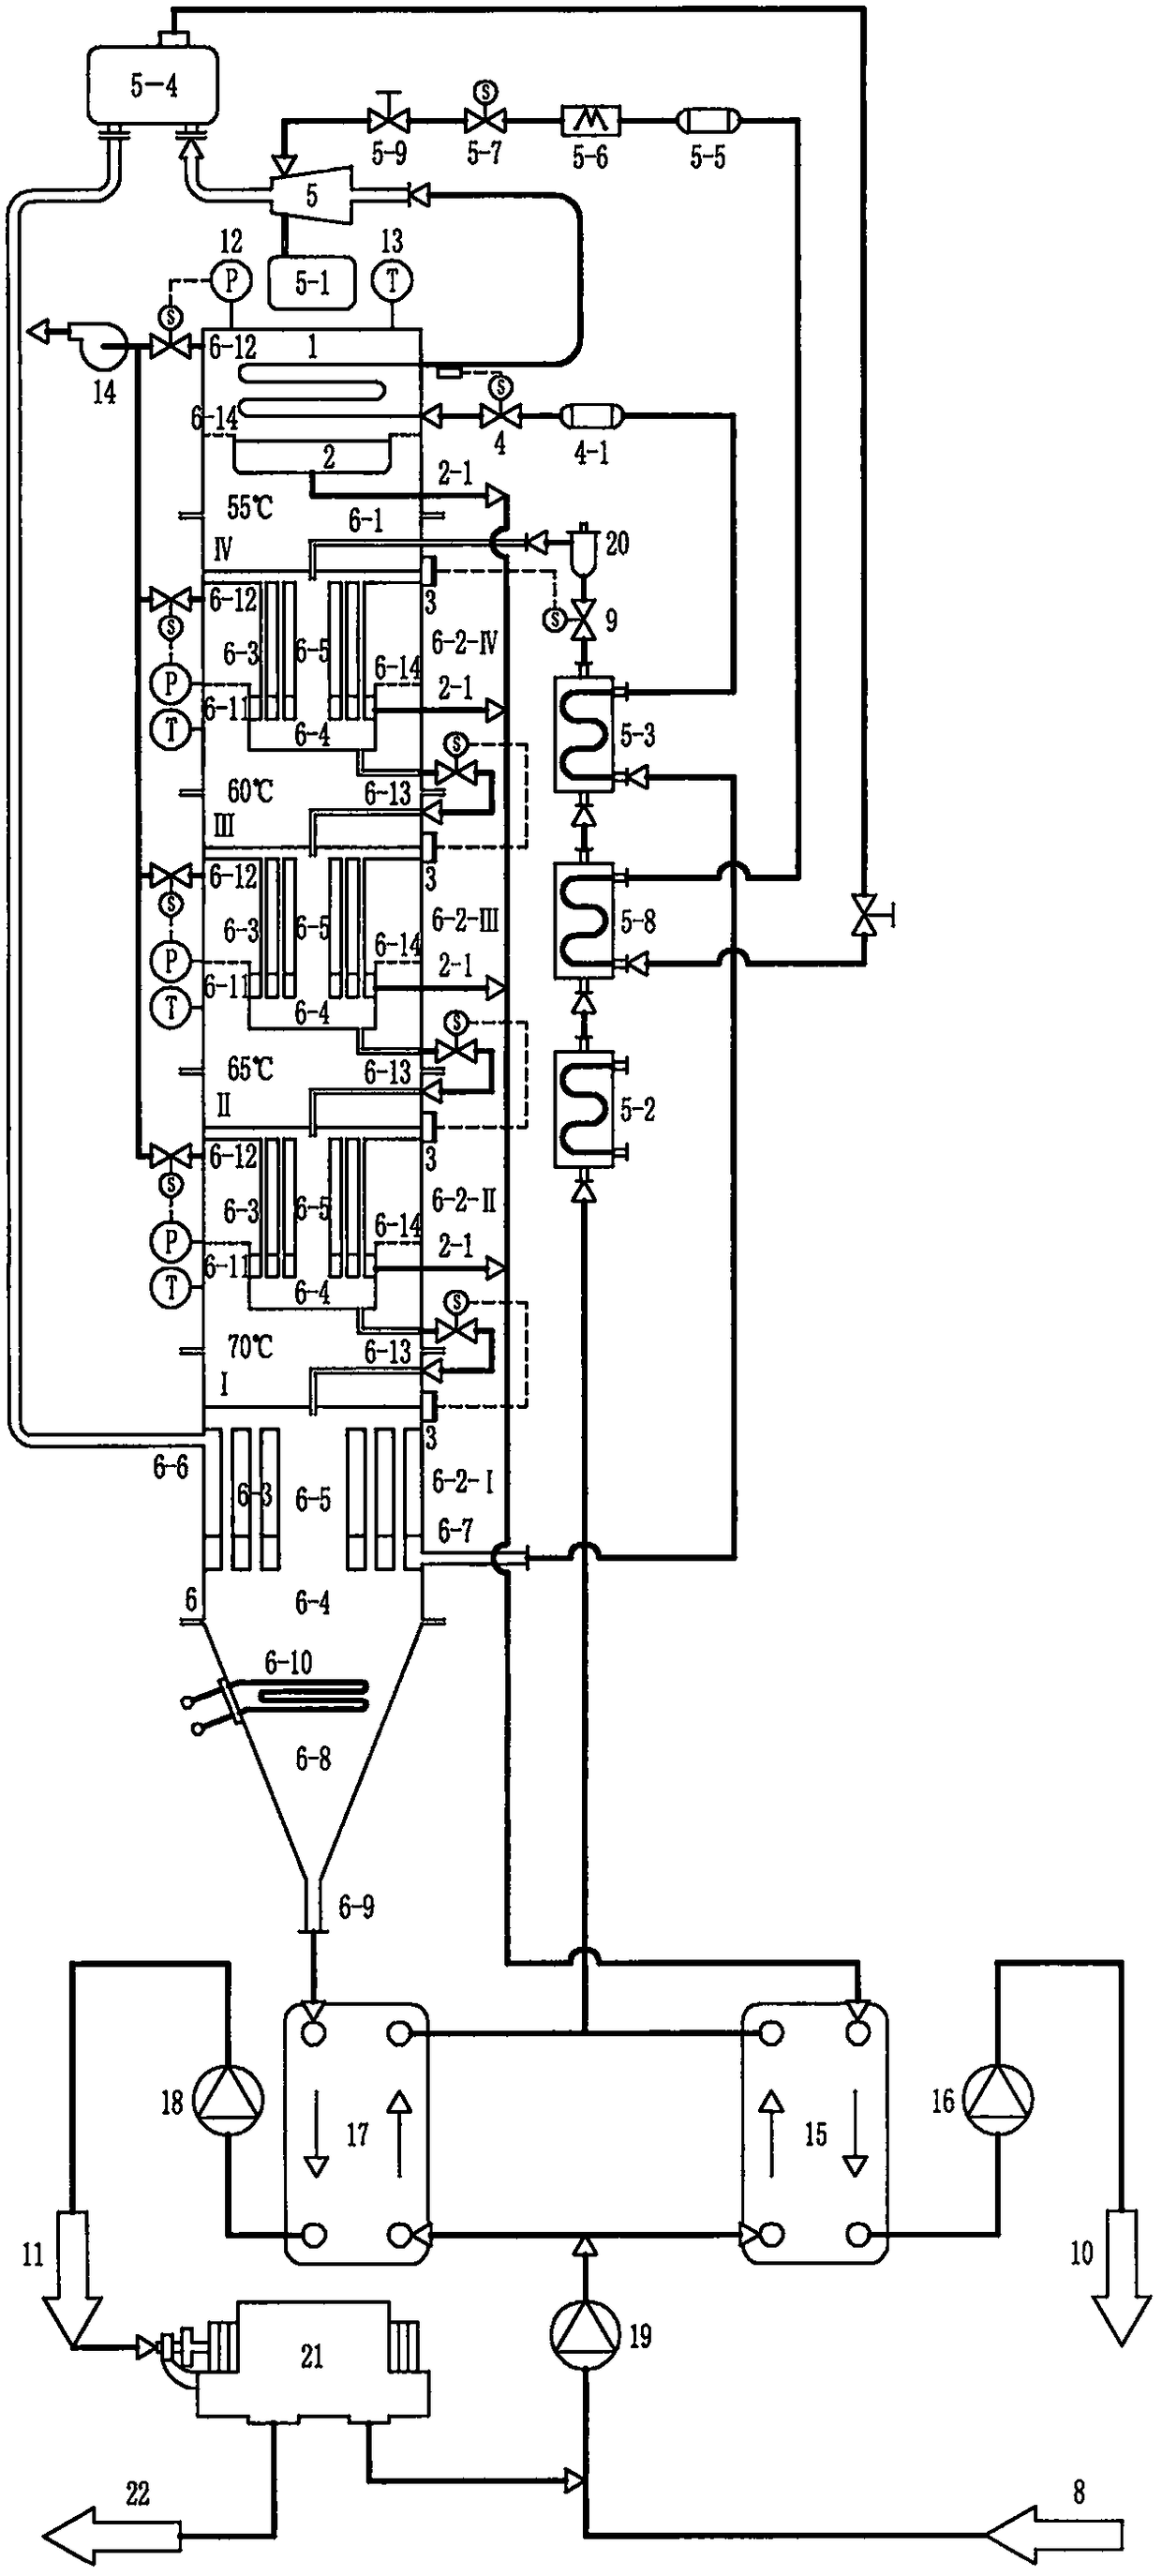 Multiple-effect heat pipe type distillation column driven by condensation steam source heat pump